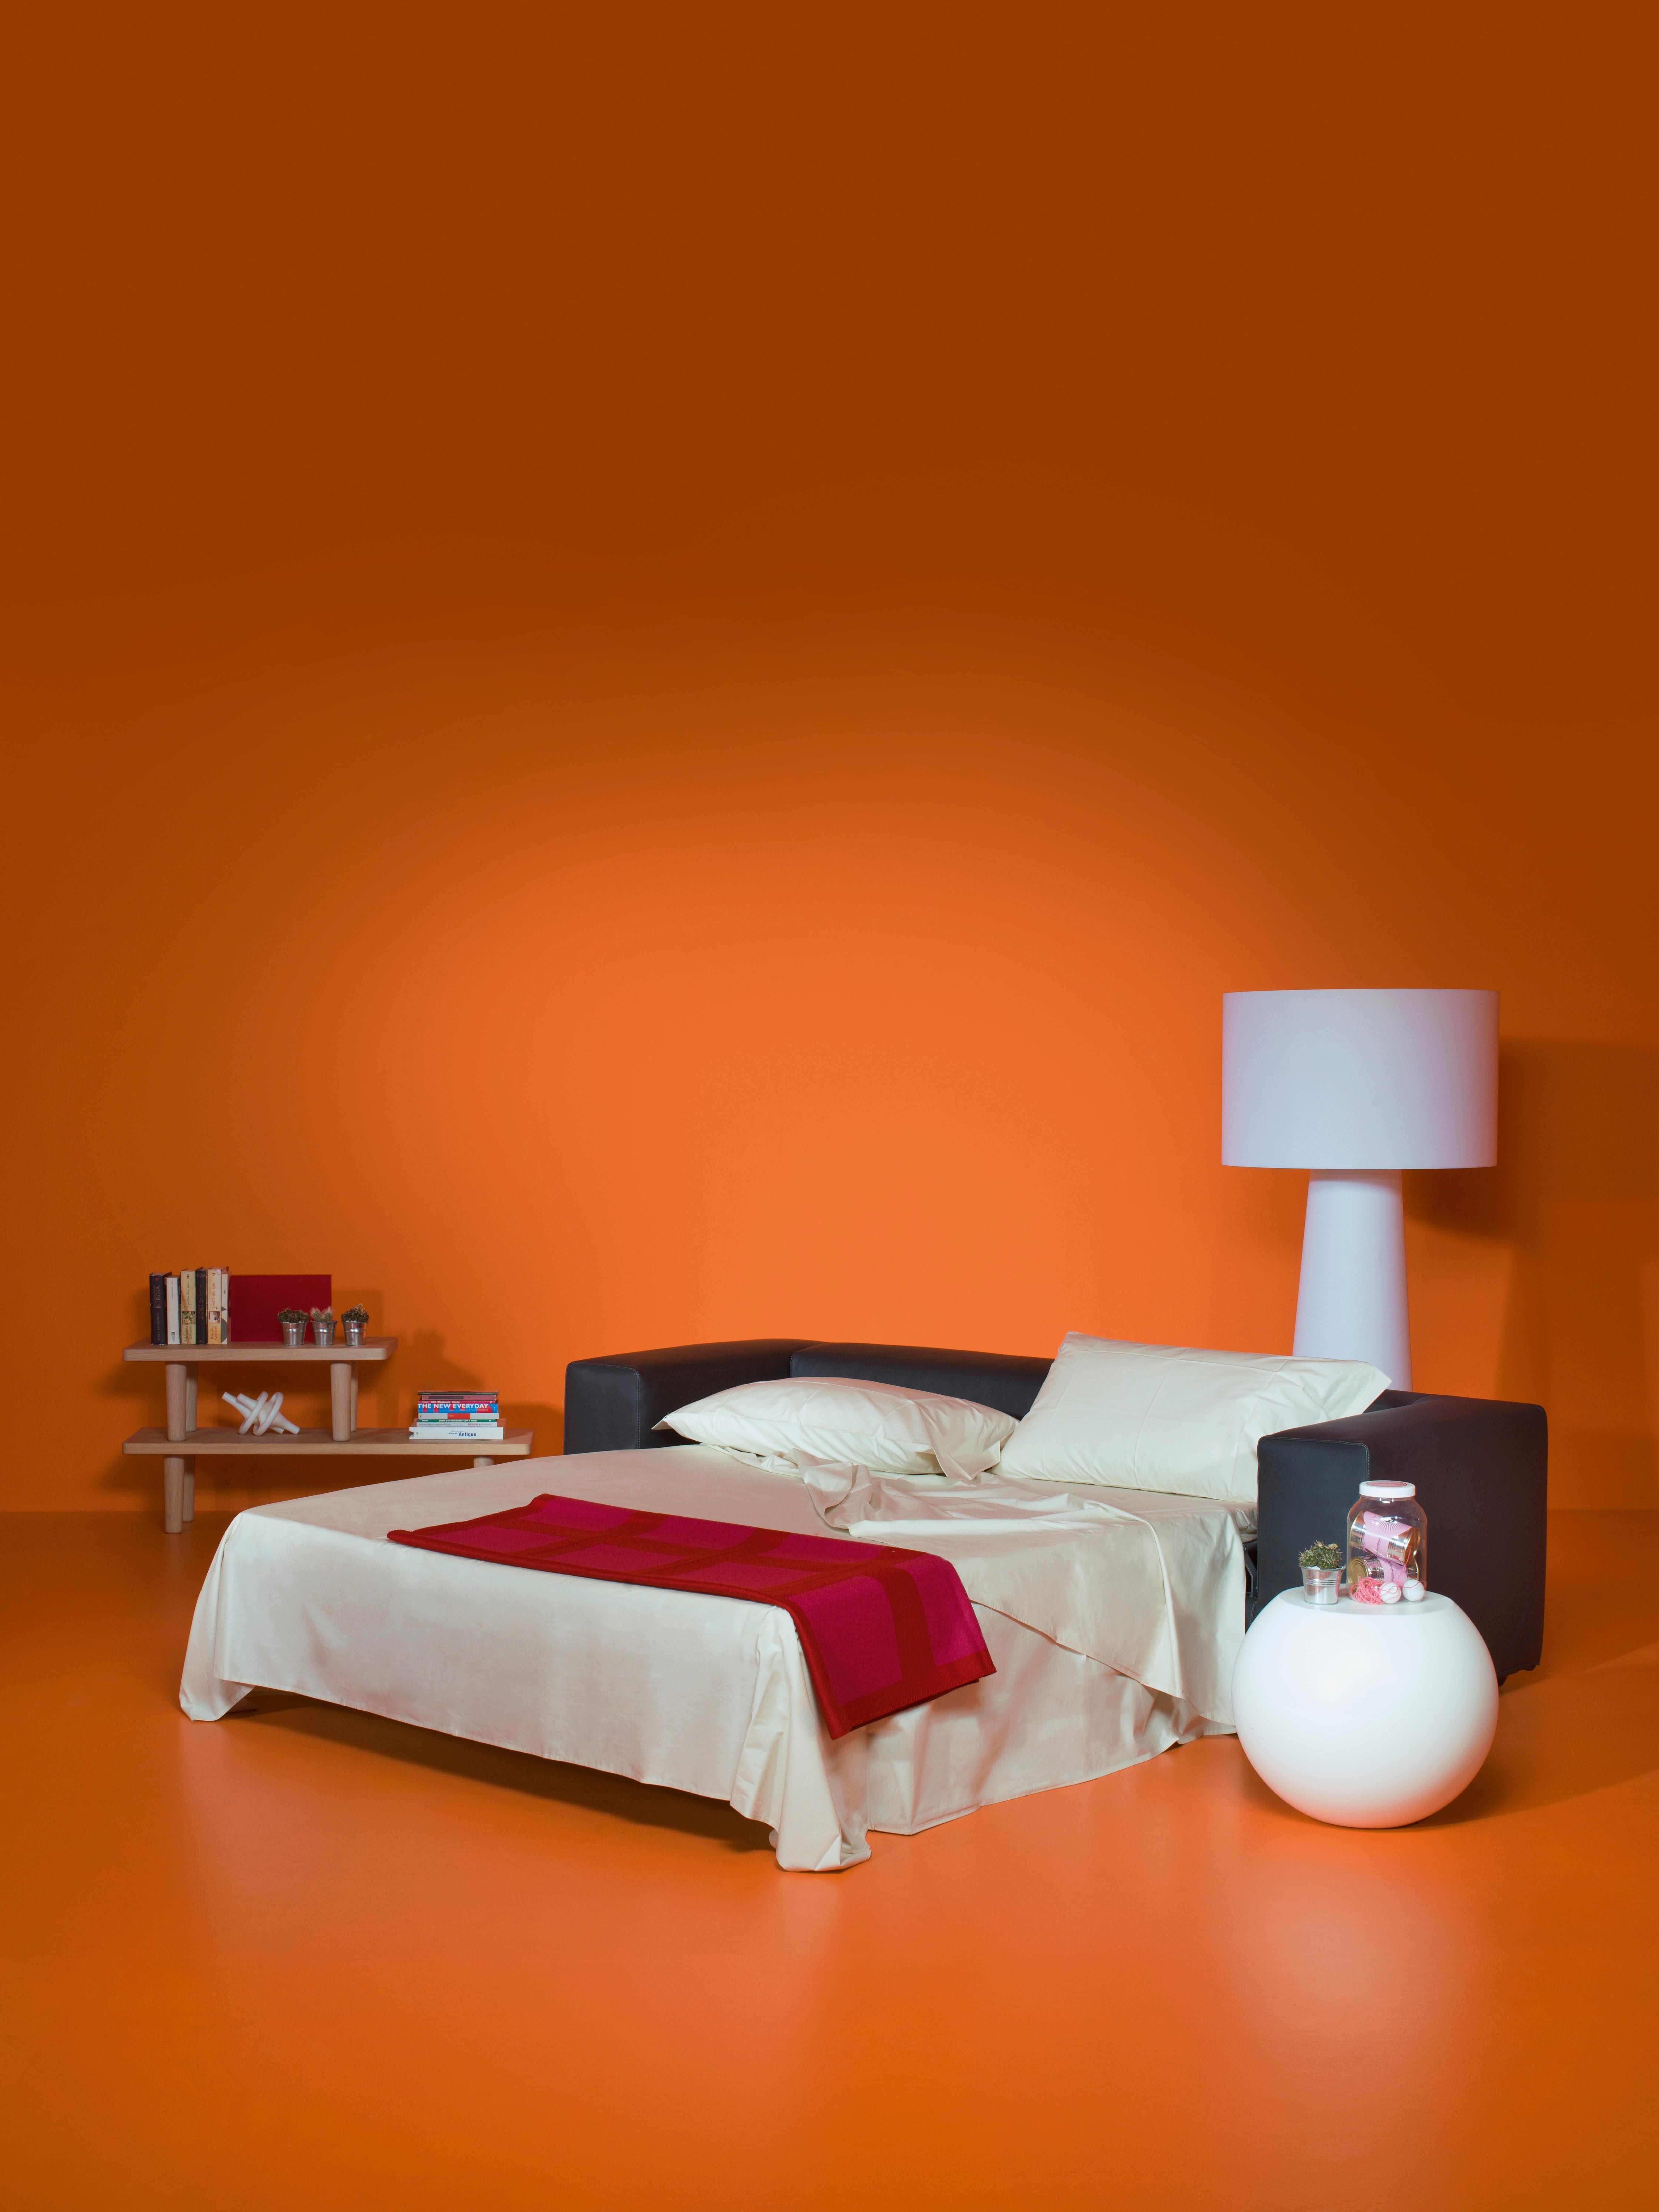 Conçu par Rodolfo Dordoni, le canapé-lit Cuba 25 est un siège à deux places qui contient un lit escamotable. La housse amovible est disponible dans une sélection de tissus et de cuirs de la collection. Le rembourrage du canapé-lit Cuba 25 est